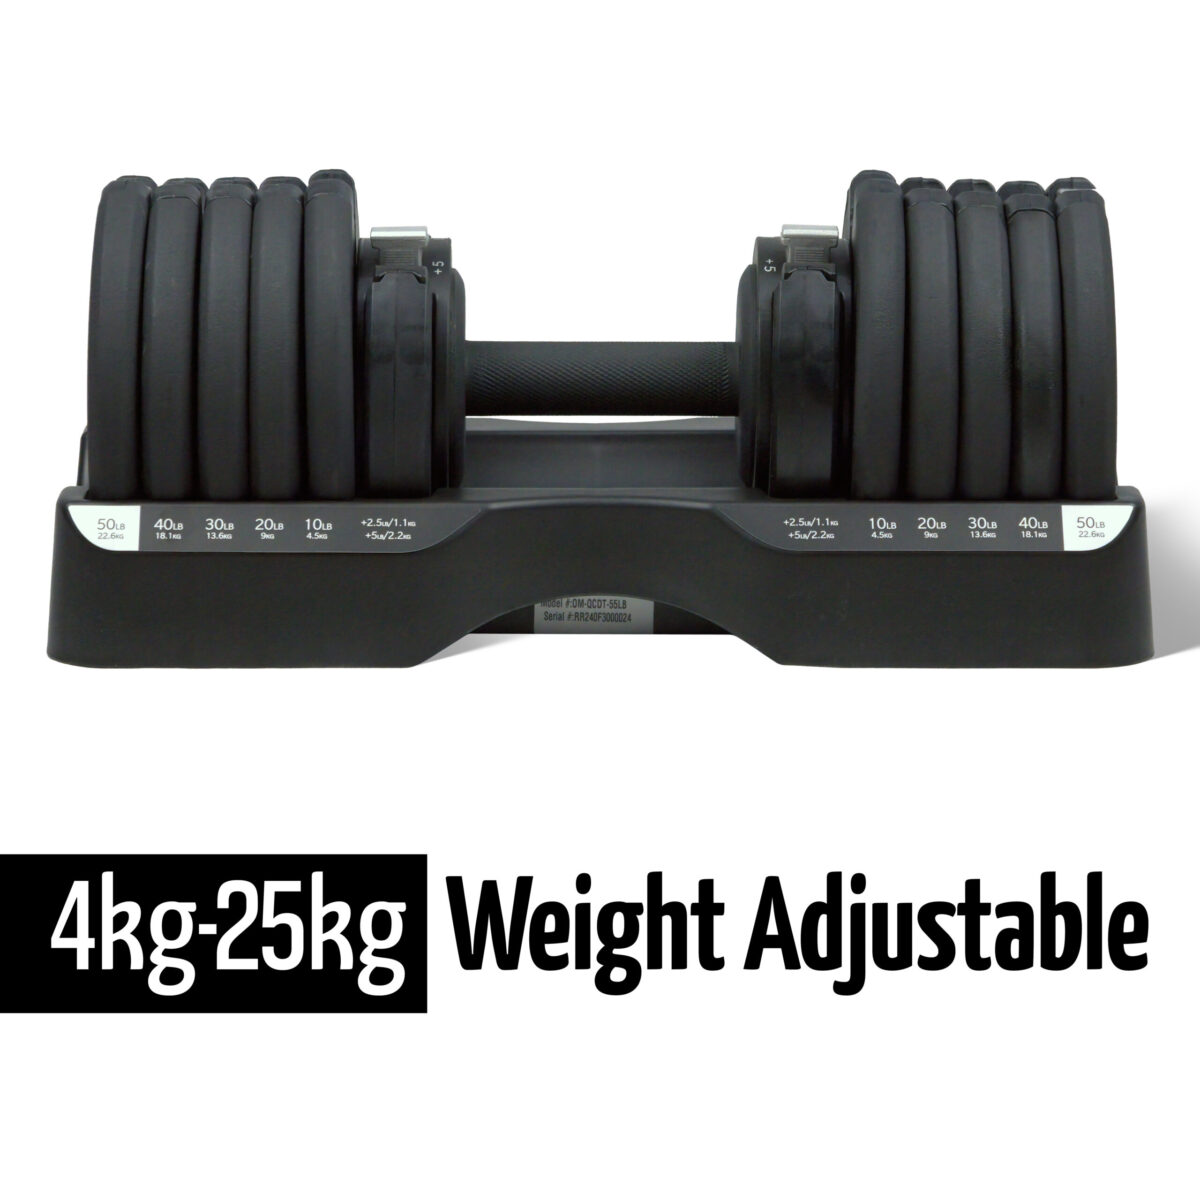 25kg Adjustable Dumbbell Weight Range